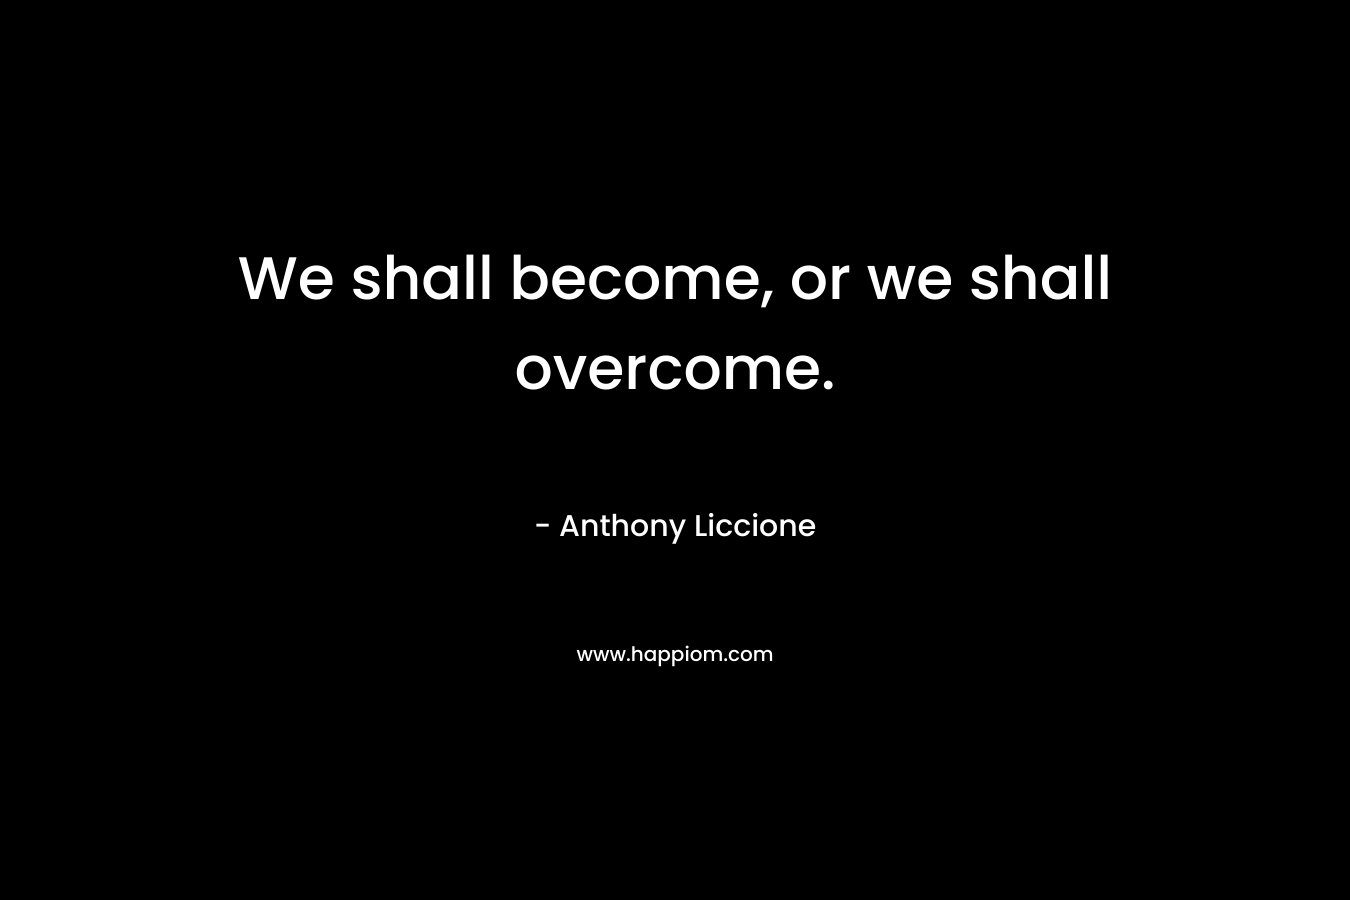 We shall become, or we shall overcome.